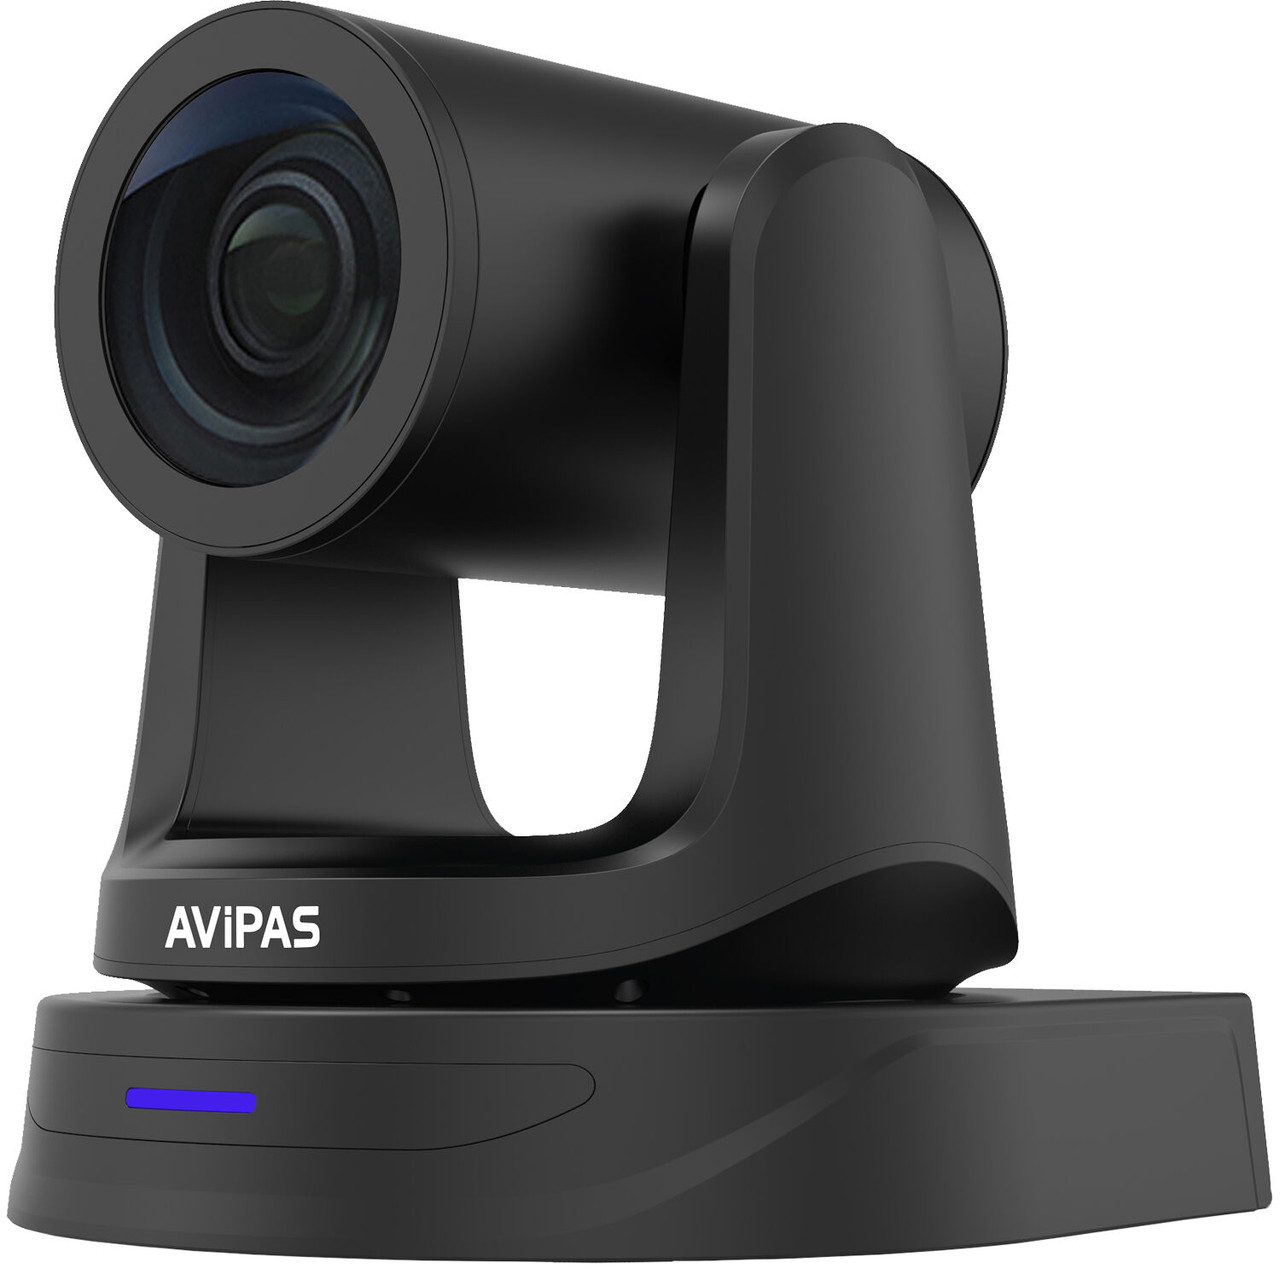 AViPAS 3G-SDI/HDMI/USB Camera with PoE and 20x Zoom (Black)